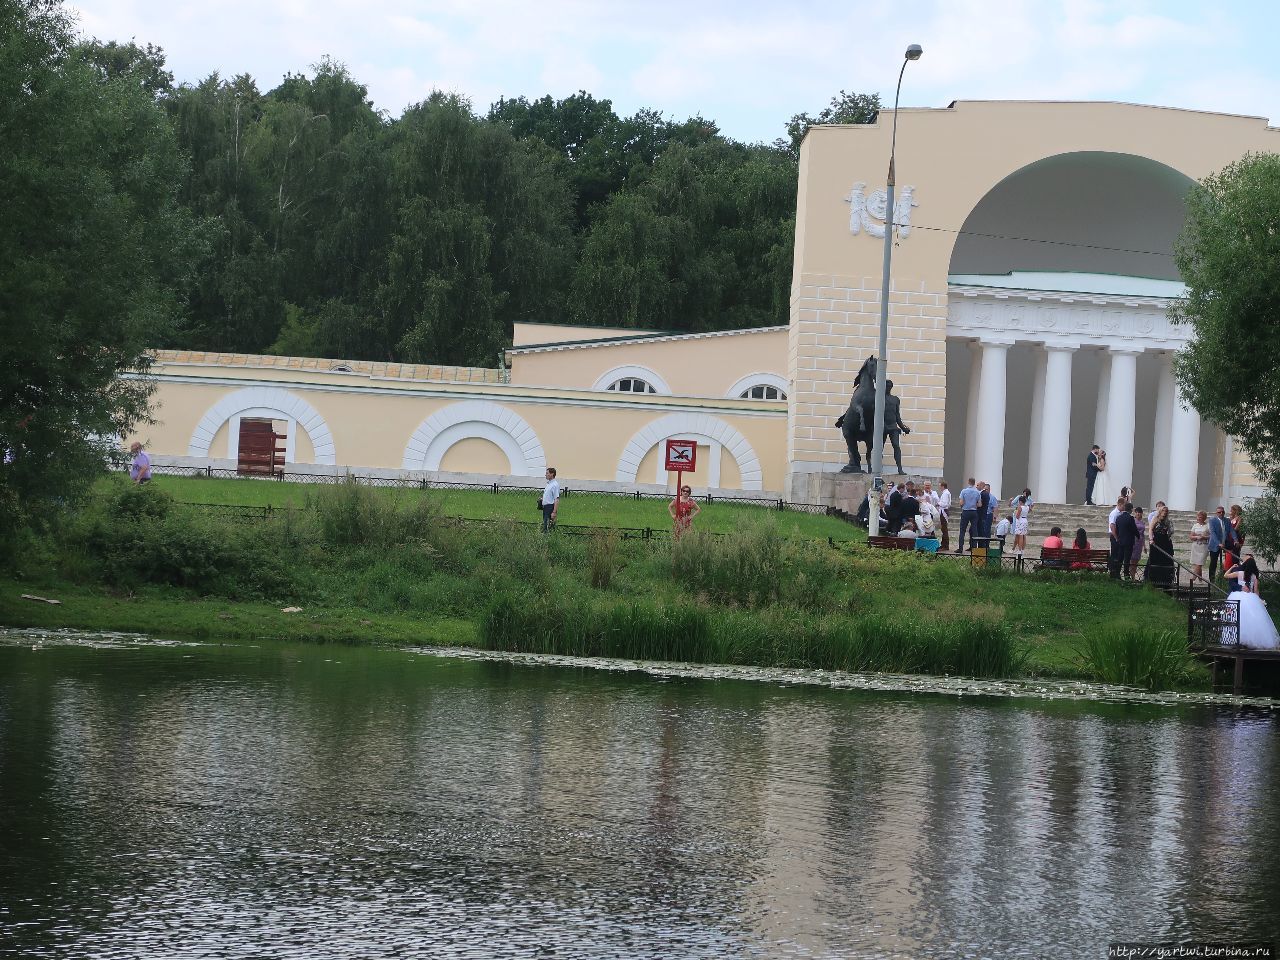 Конный двор с музыкальным павильоном. Москва, Россия